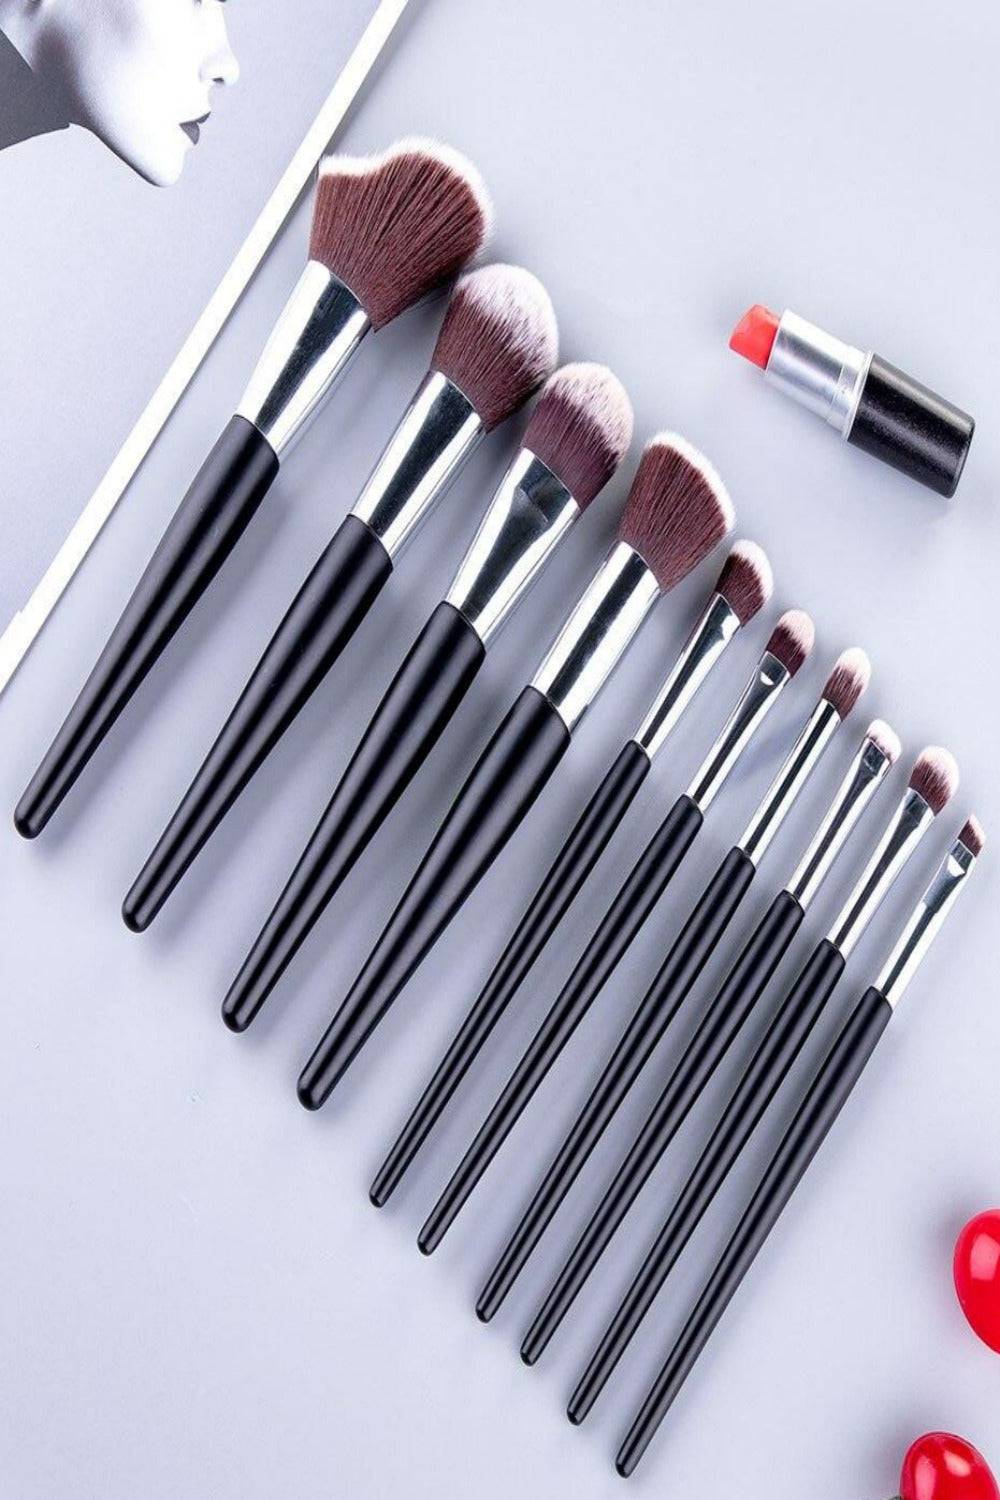 Soft Professional Makeup Brush Set With Bag - TGC Boutique - Makeup Brush Set